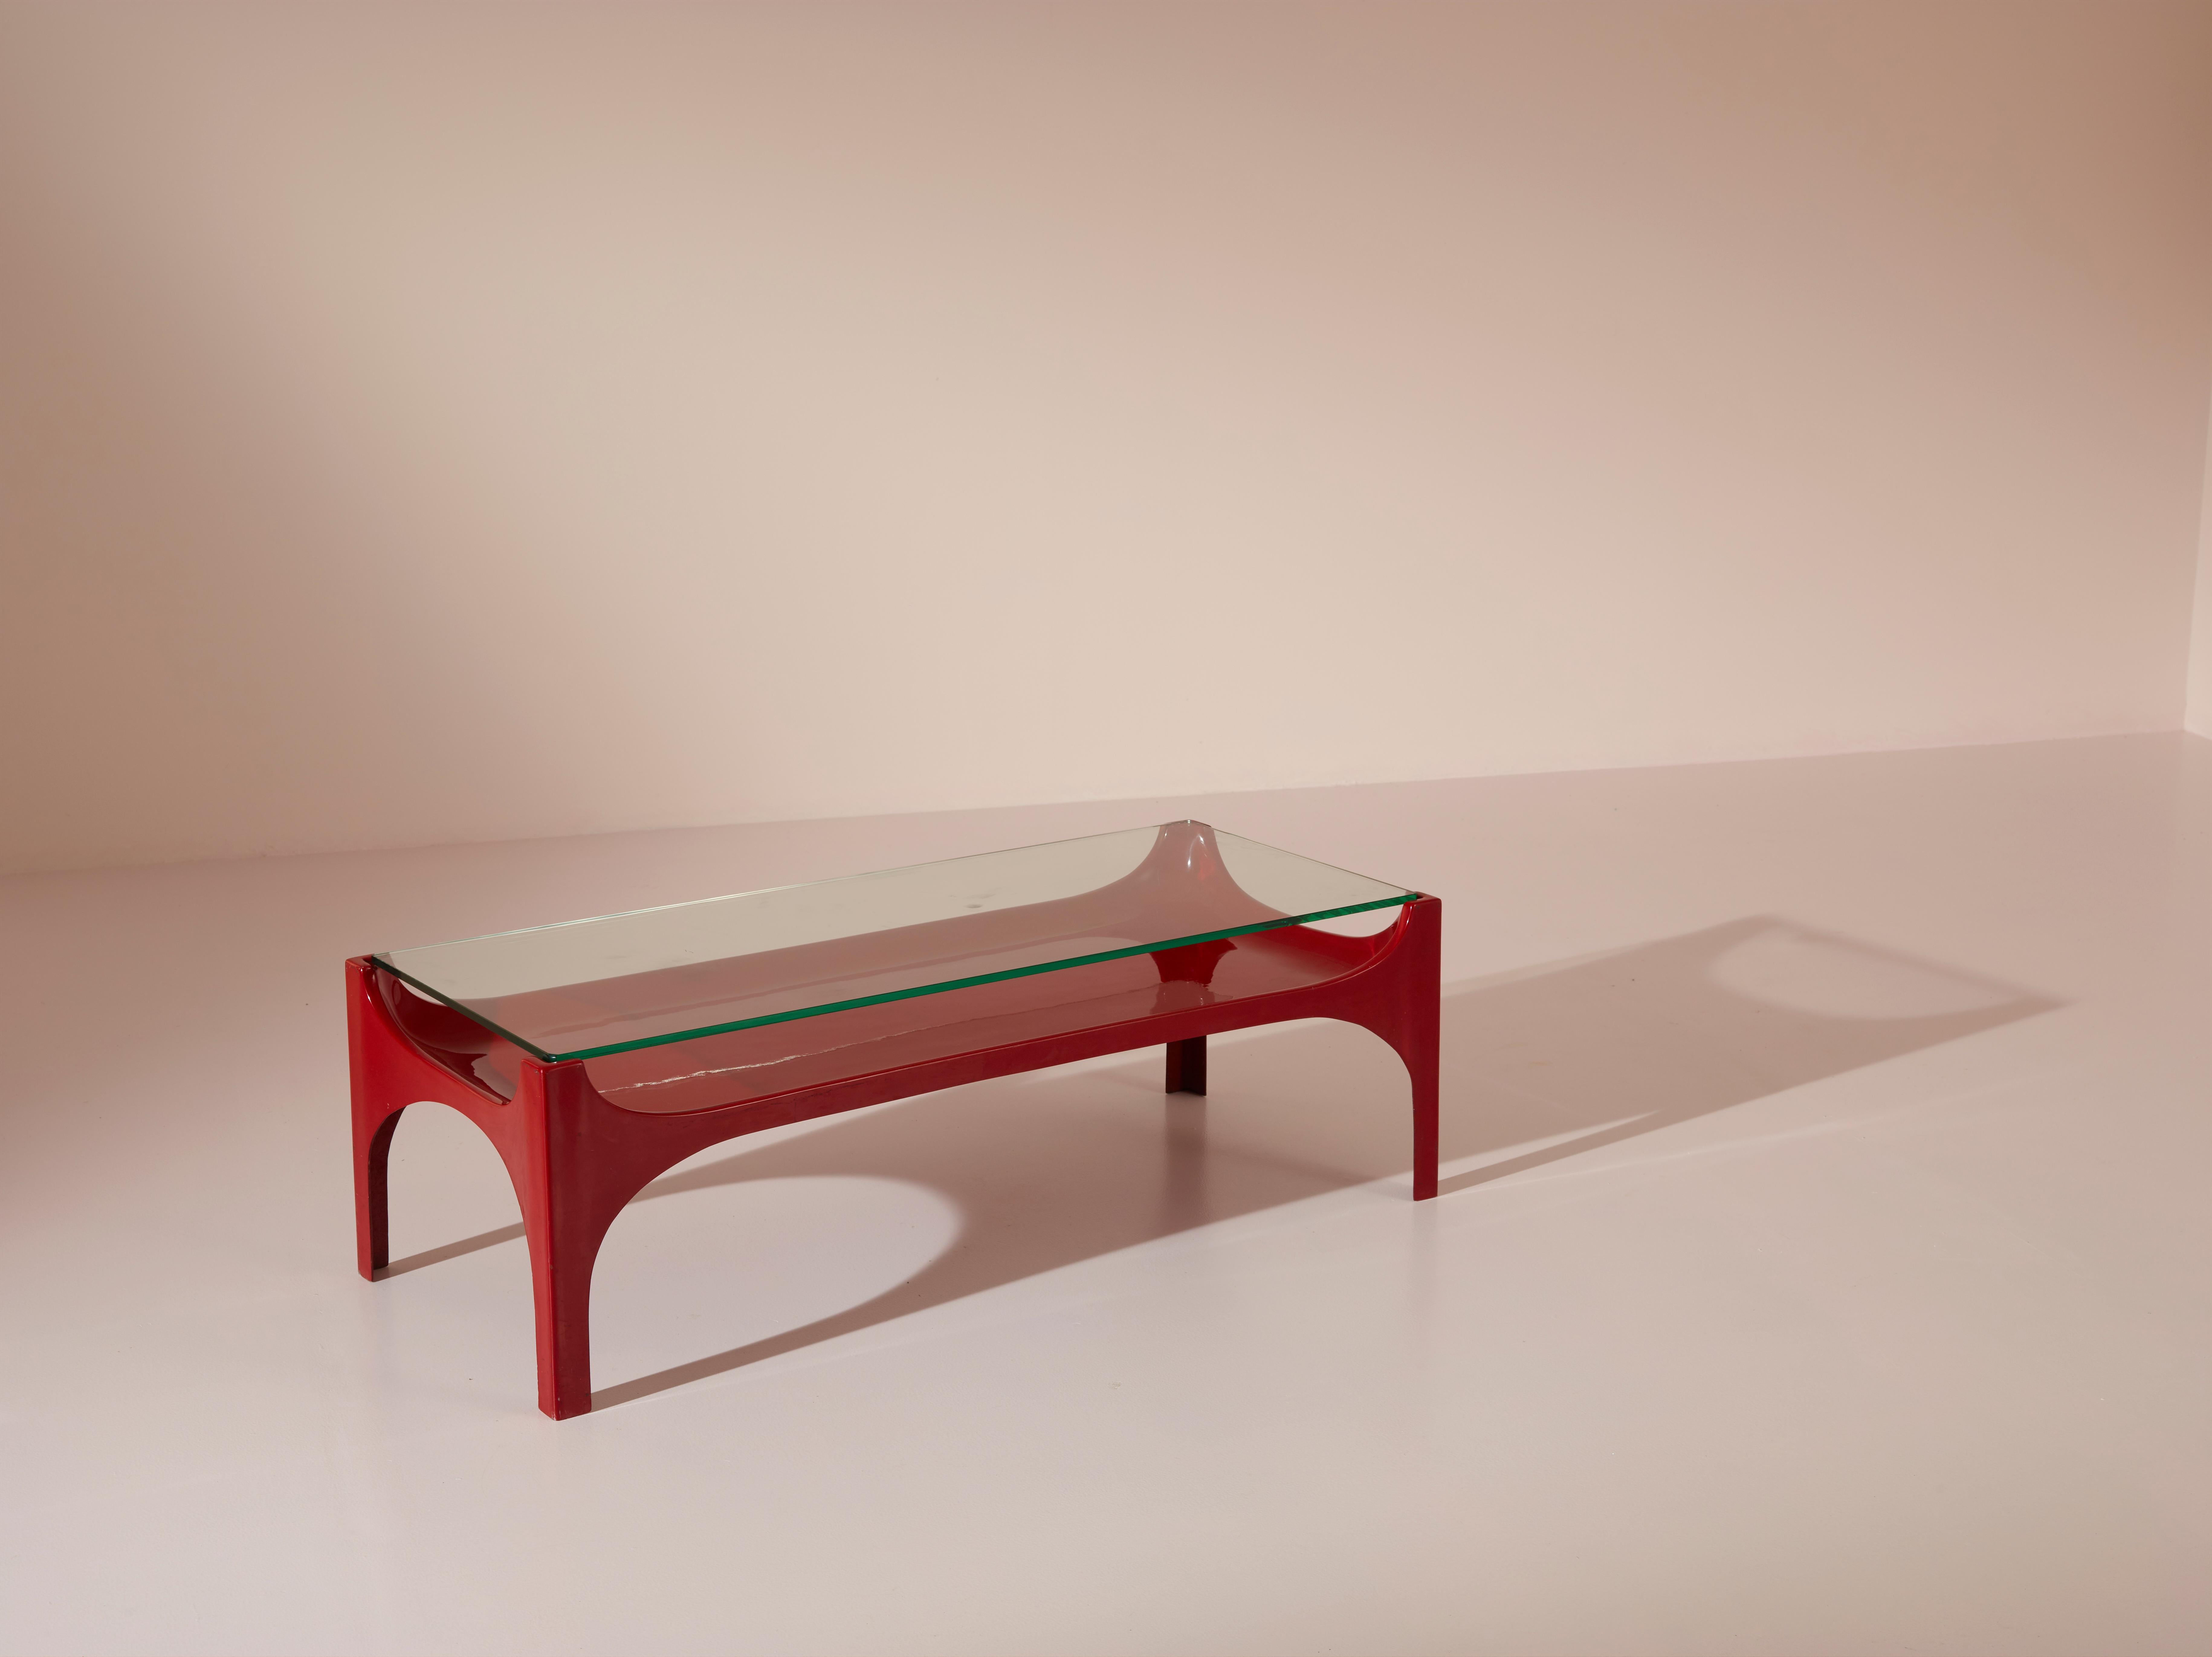 Une table basse rare, modèle 2542 de Fontana Arte, combine des matériaux contrastés mais complémentaires : la fibre de verre et le cristal. Cette combinaison inhabituelle, caractérisée par leur polyvalence plastique, permet de créer des formes